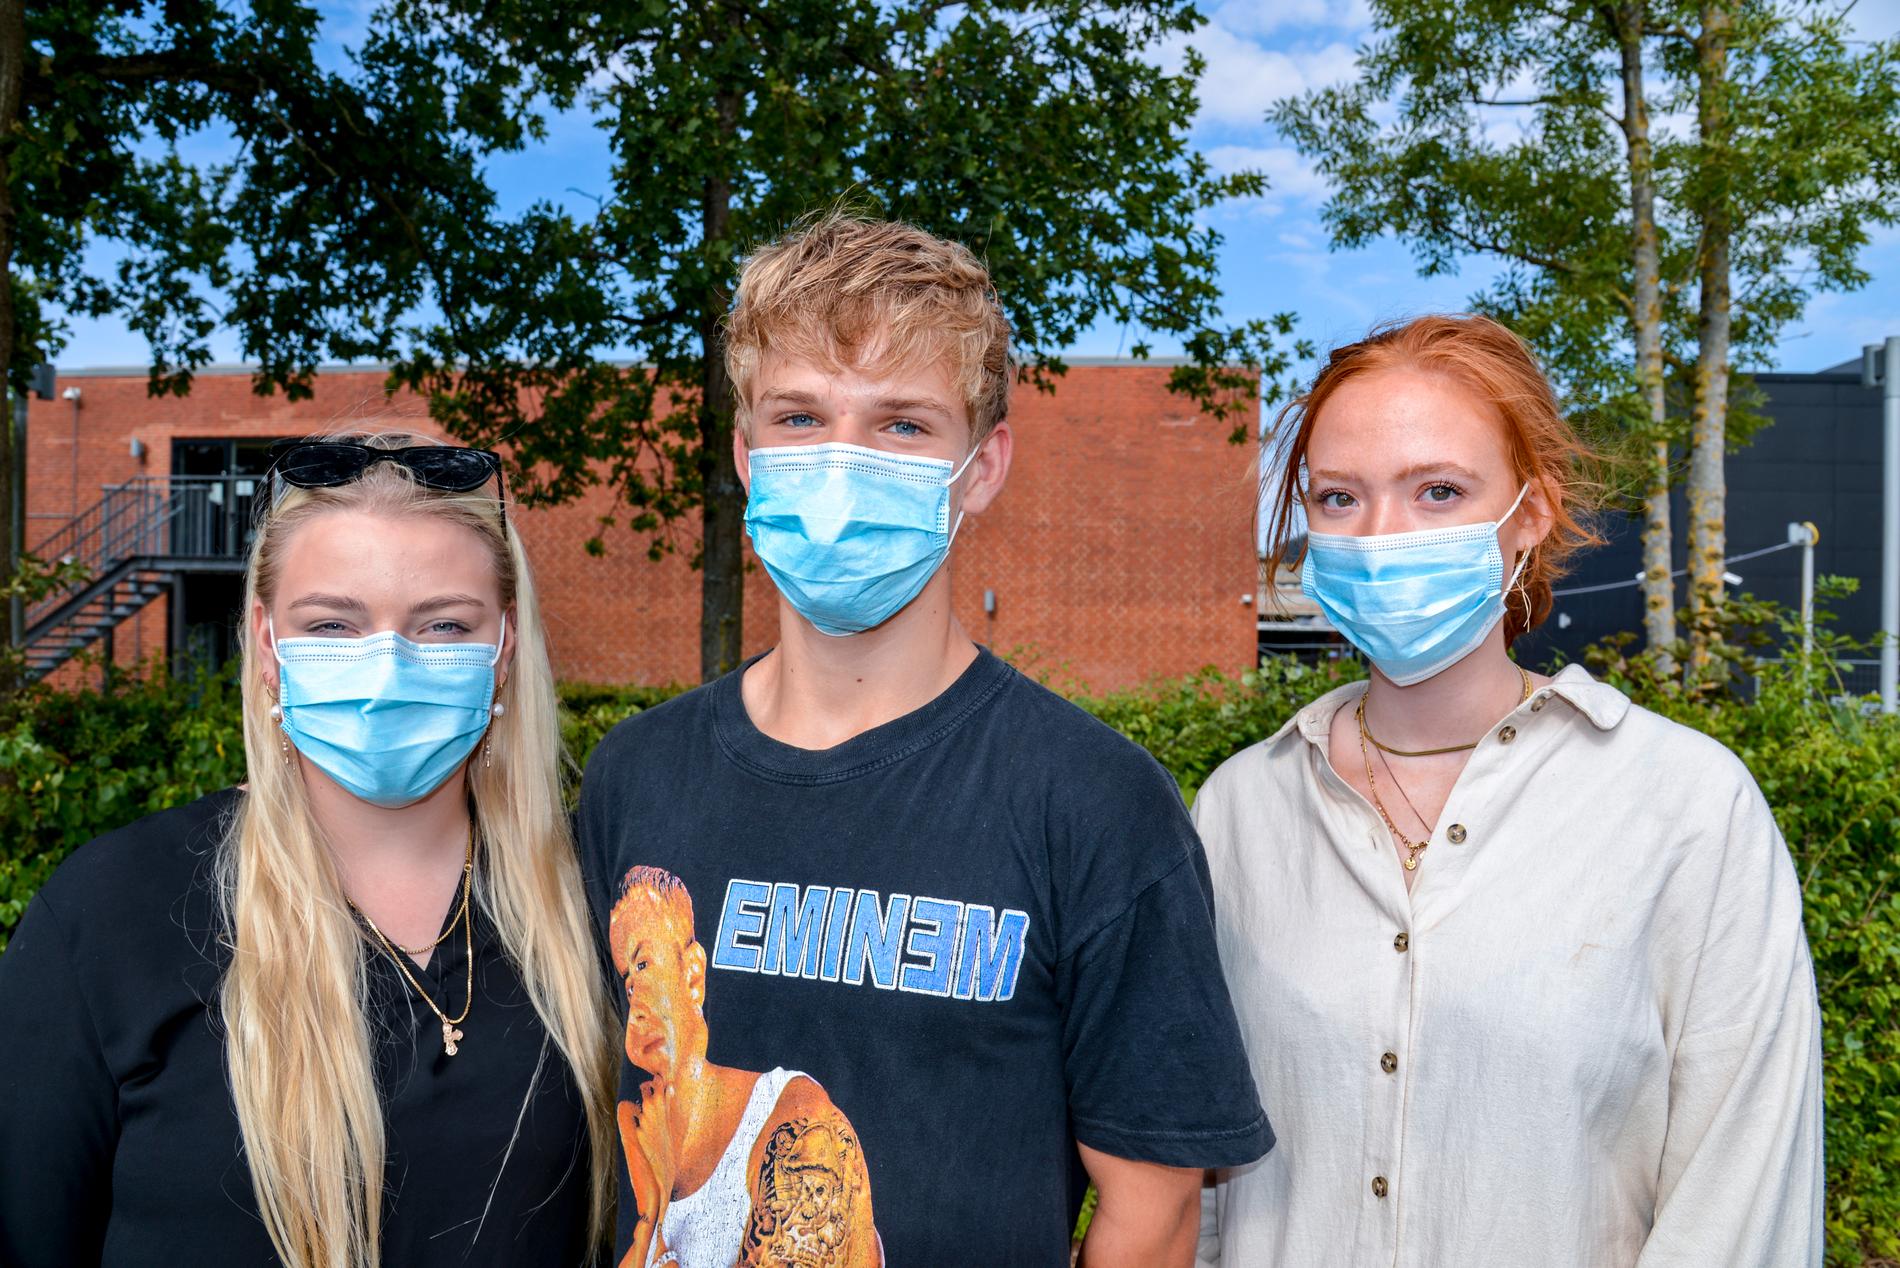 Karoline Birch, Elias Holm Jørgensen och Freja Egegaard Olsen på Roskilde katedralskole har fått munskydd av skolan första dagen efter sommarlovet.